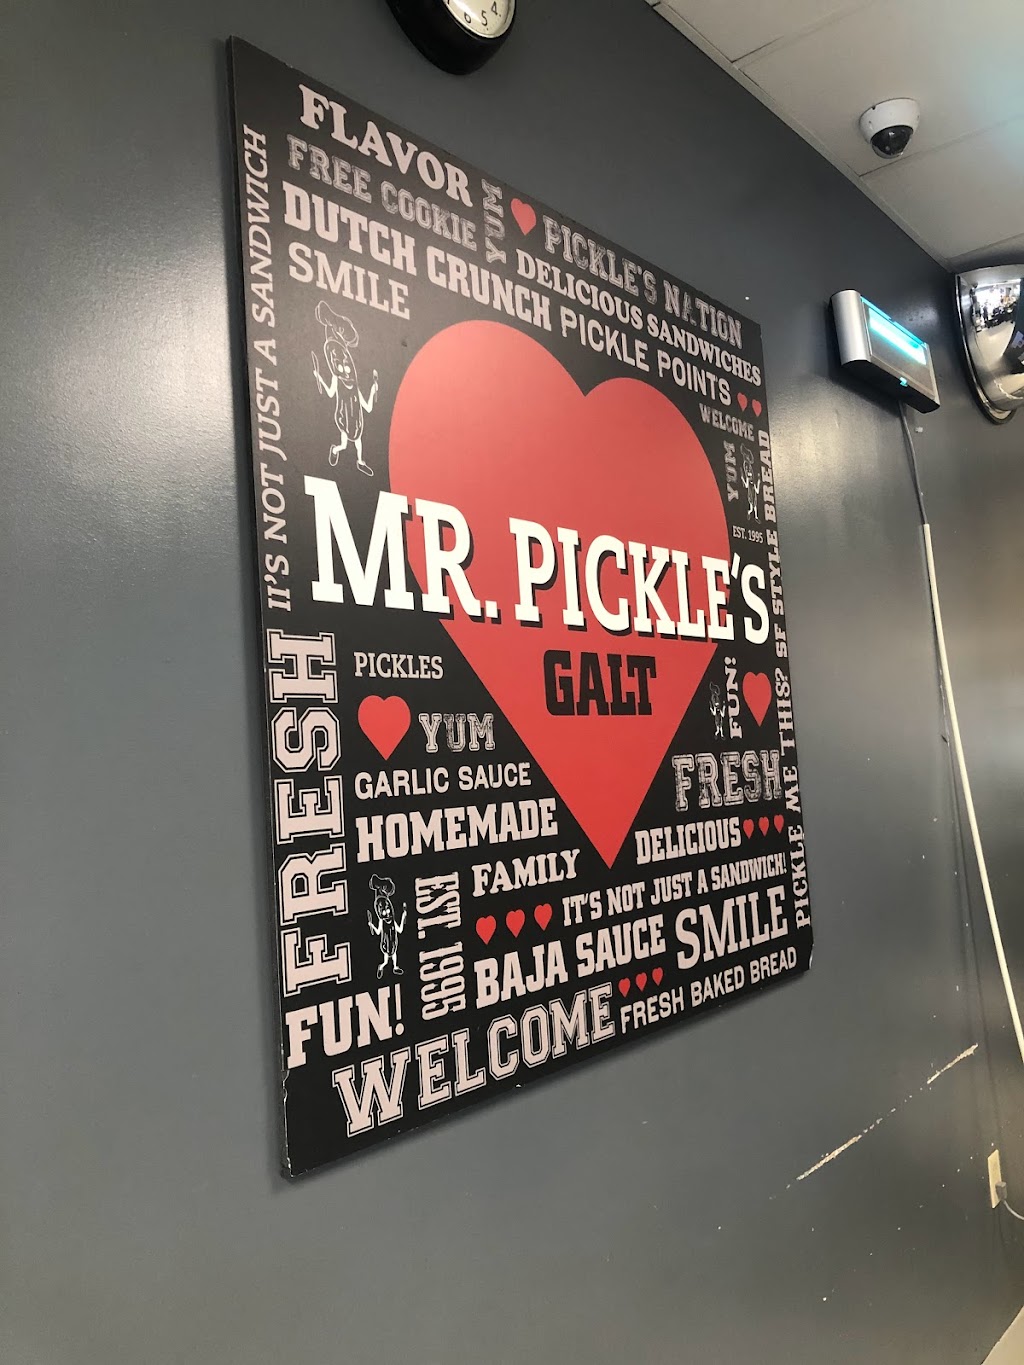 Mr. Pickles Sandwich Shop - Livermore, CA | 385 S Livermore Ave, Livermore, CA 94550 | Phone: (925) 373-7553